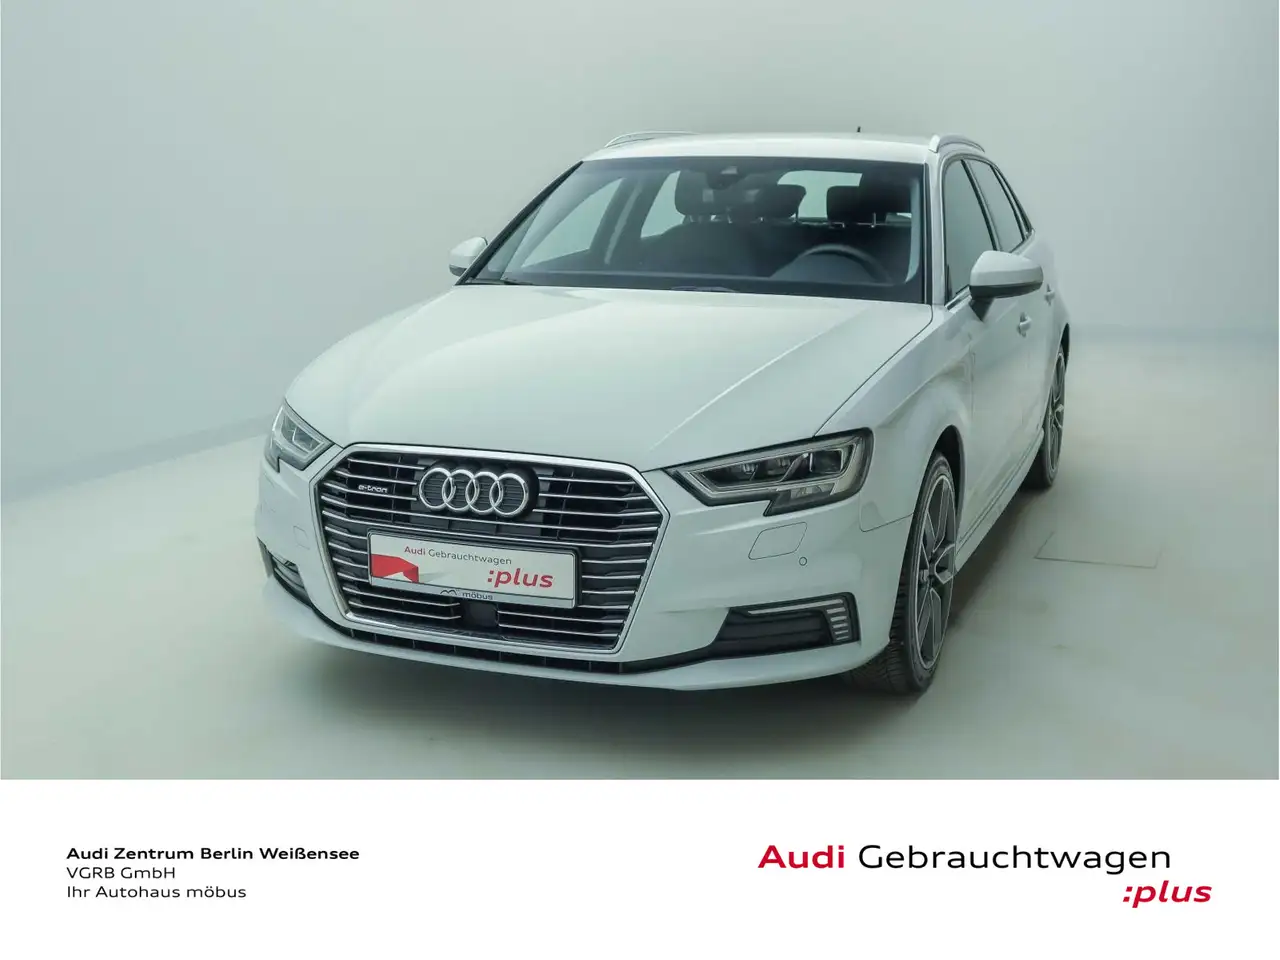 Audi A3 Berline in Wit tweedehands in Berlin voor € 22.489,-